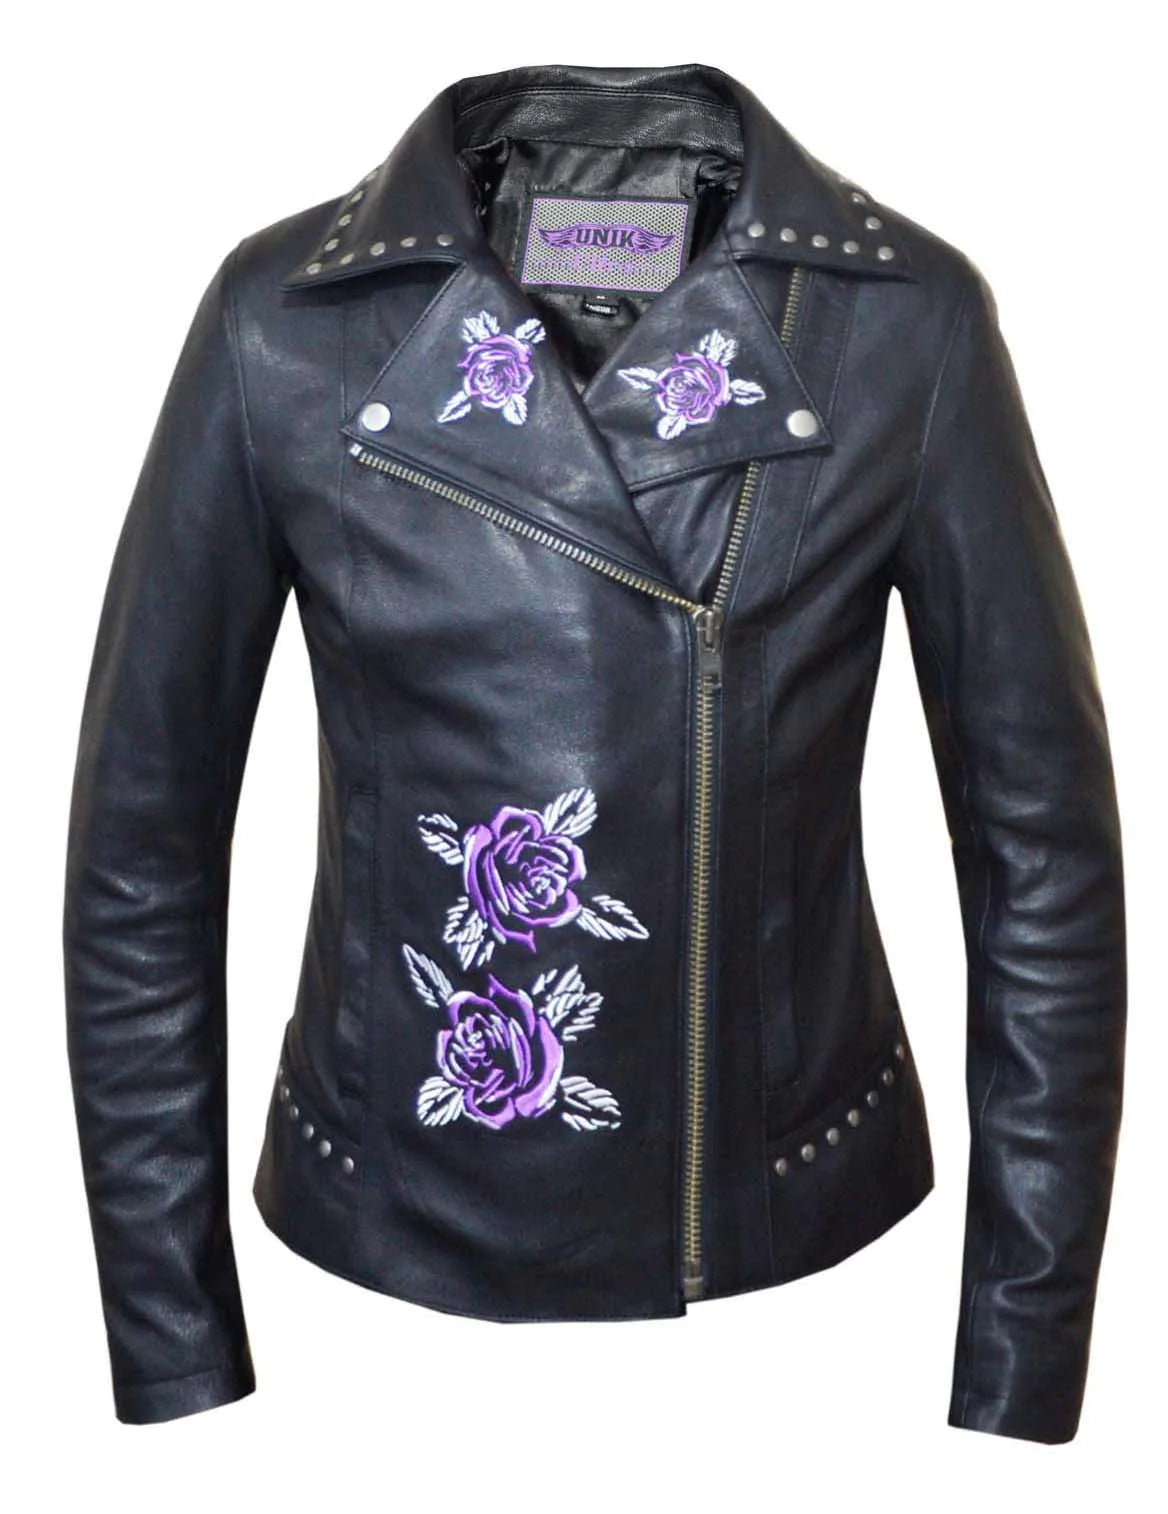 6562.17- Women Purple Rose Leather Jacket